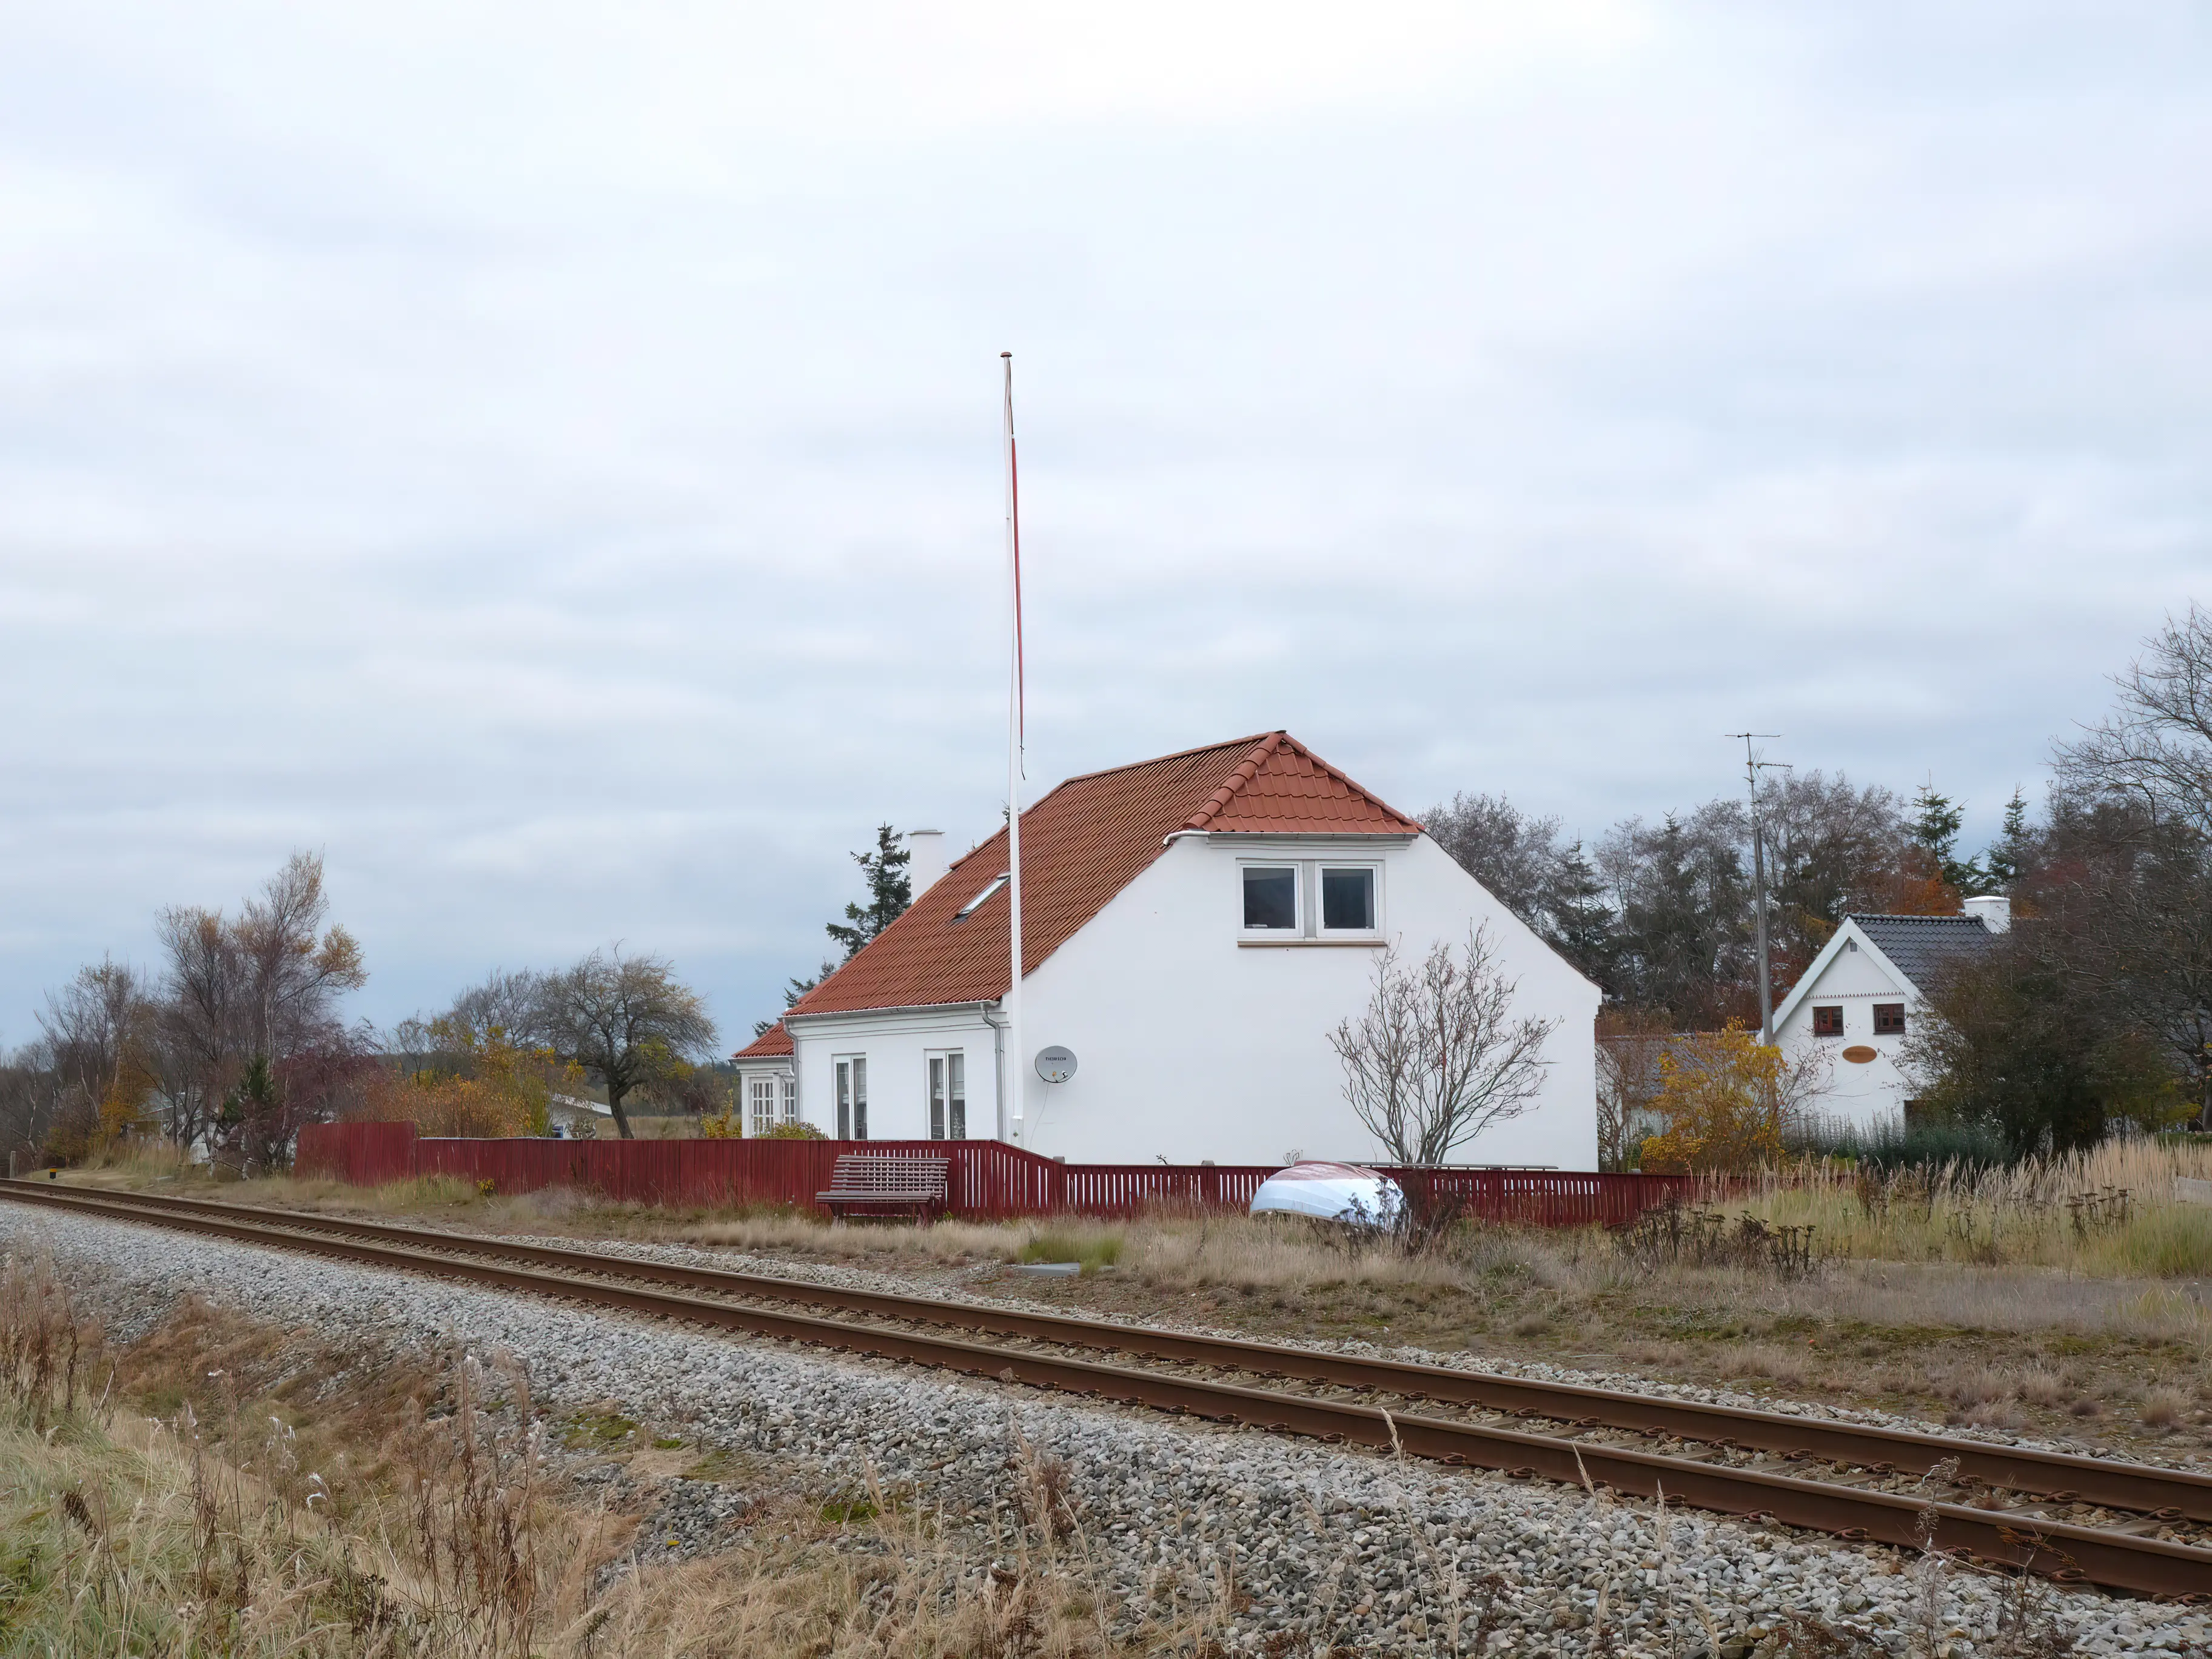 Billede af Napstjert Station.